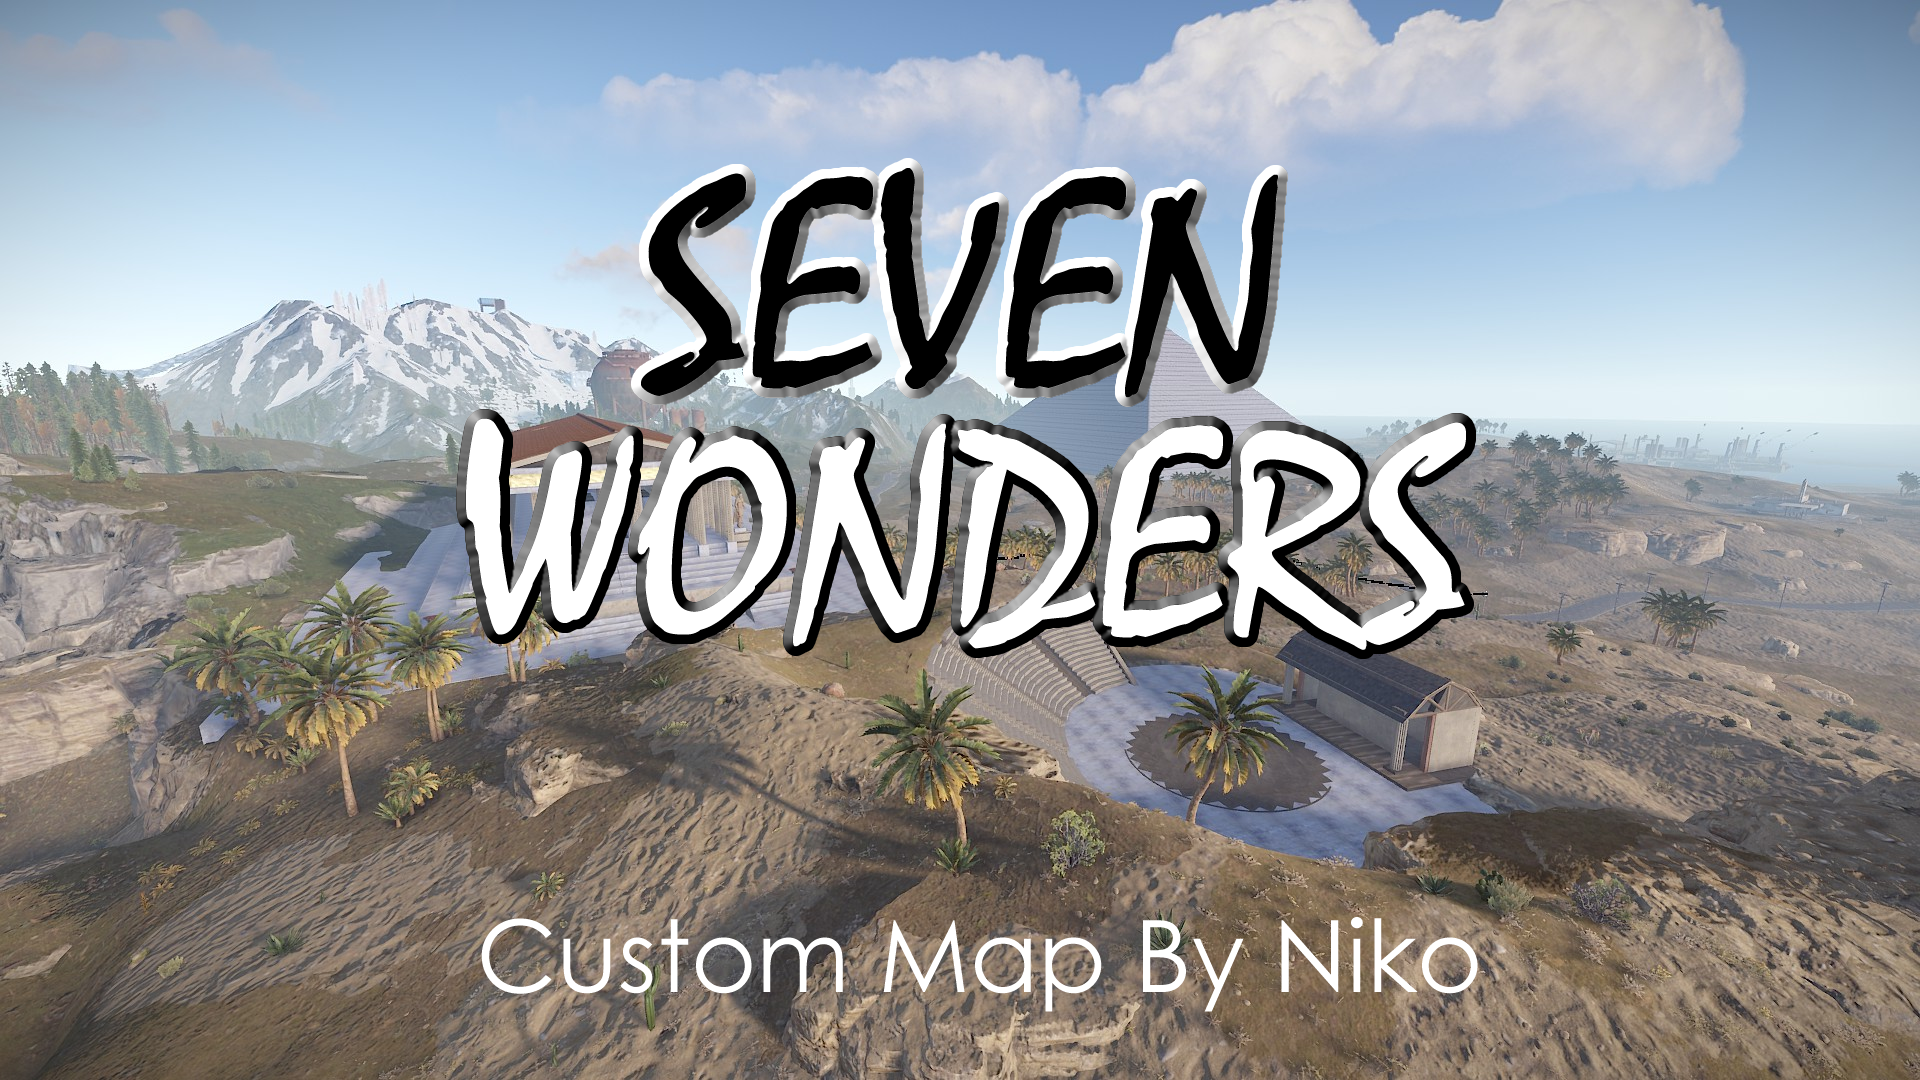 Seven Wonders Custom Map by Niko